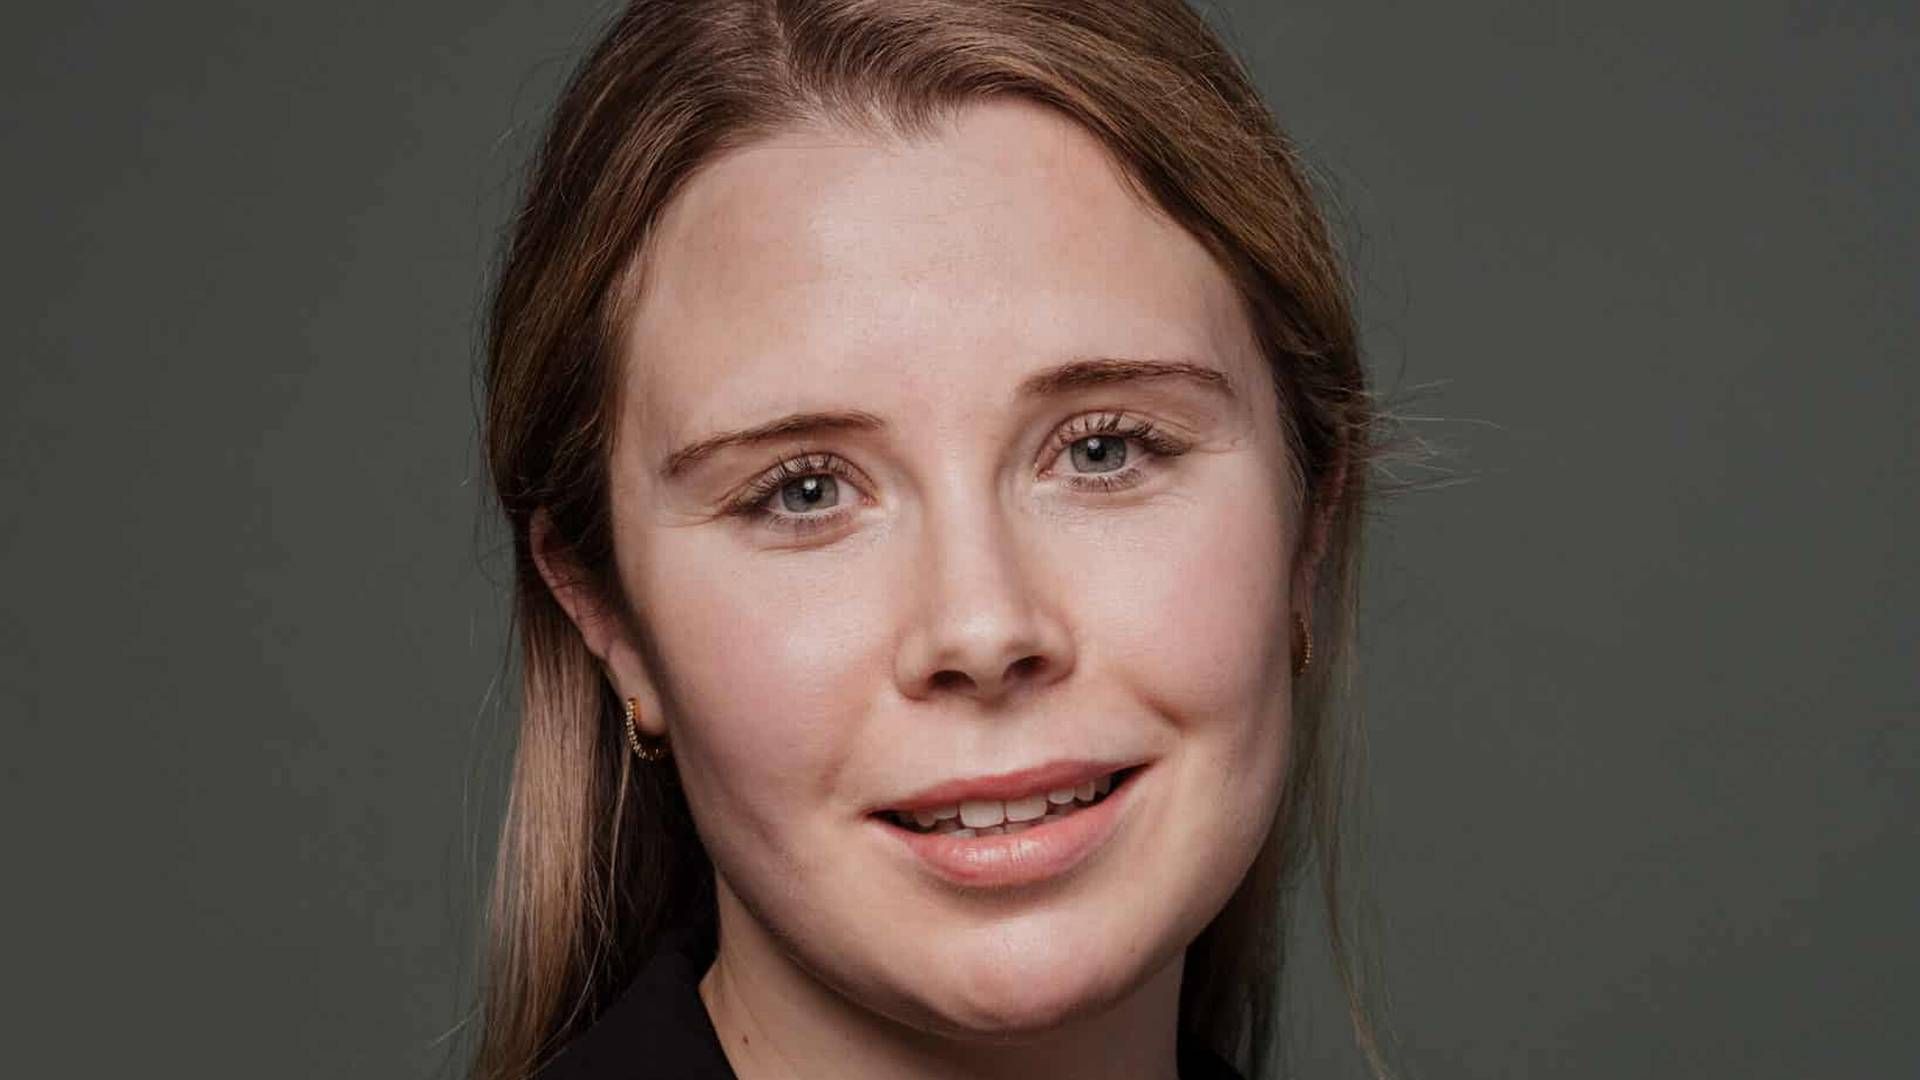 FORLATER HJORT: Pernille Edh Hasselgård blir advokat i Norgesgruppen. | Foto: Hjort